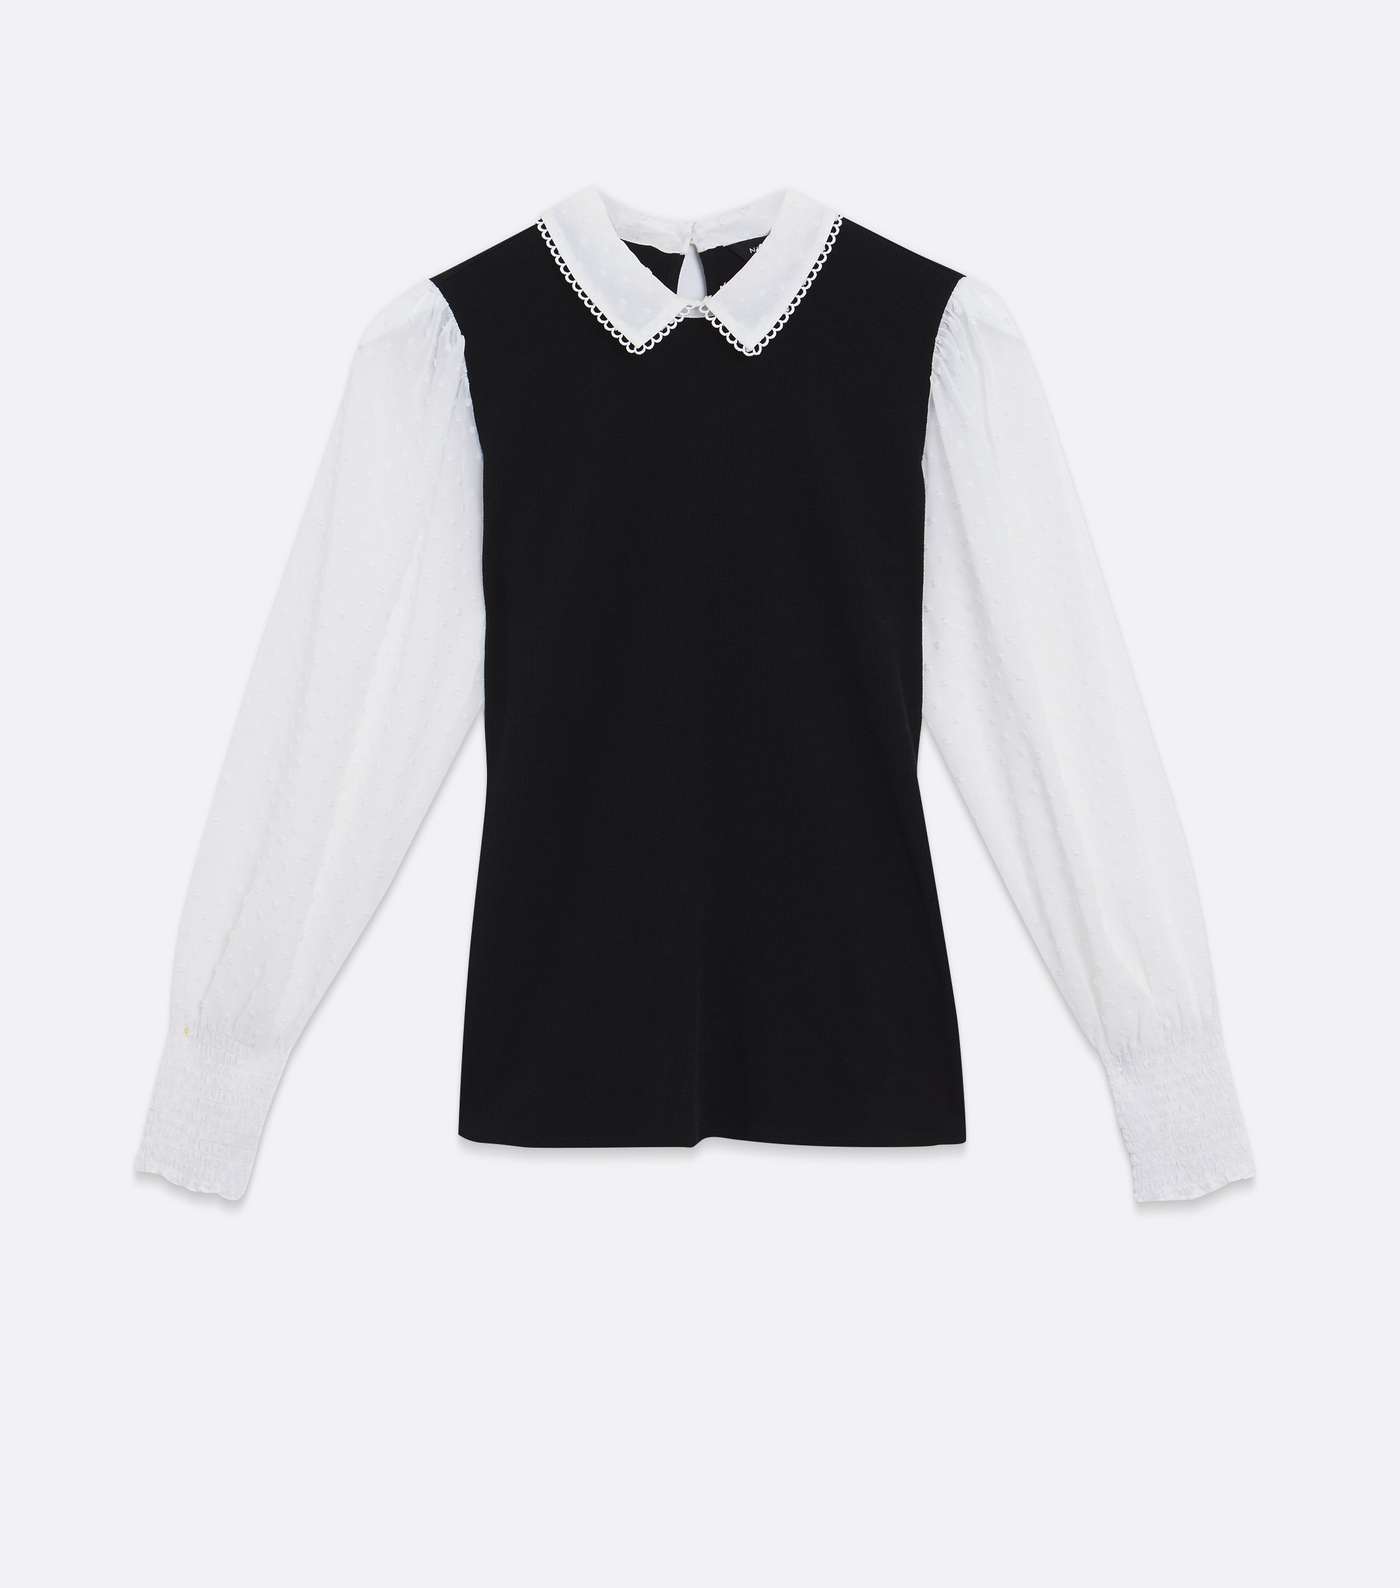 Black 2 in 1 Collared Vest Jumper Shirt Image 5